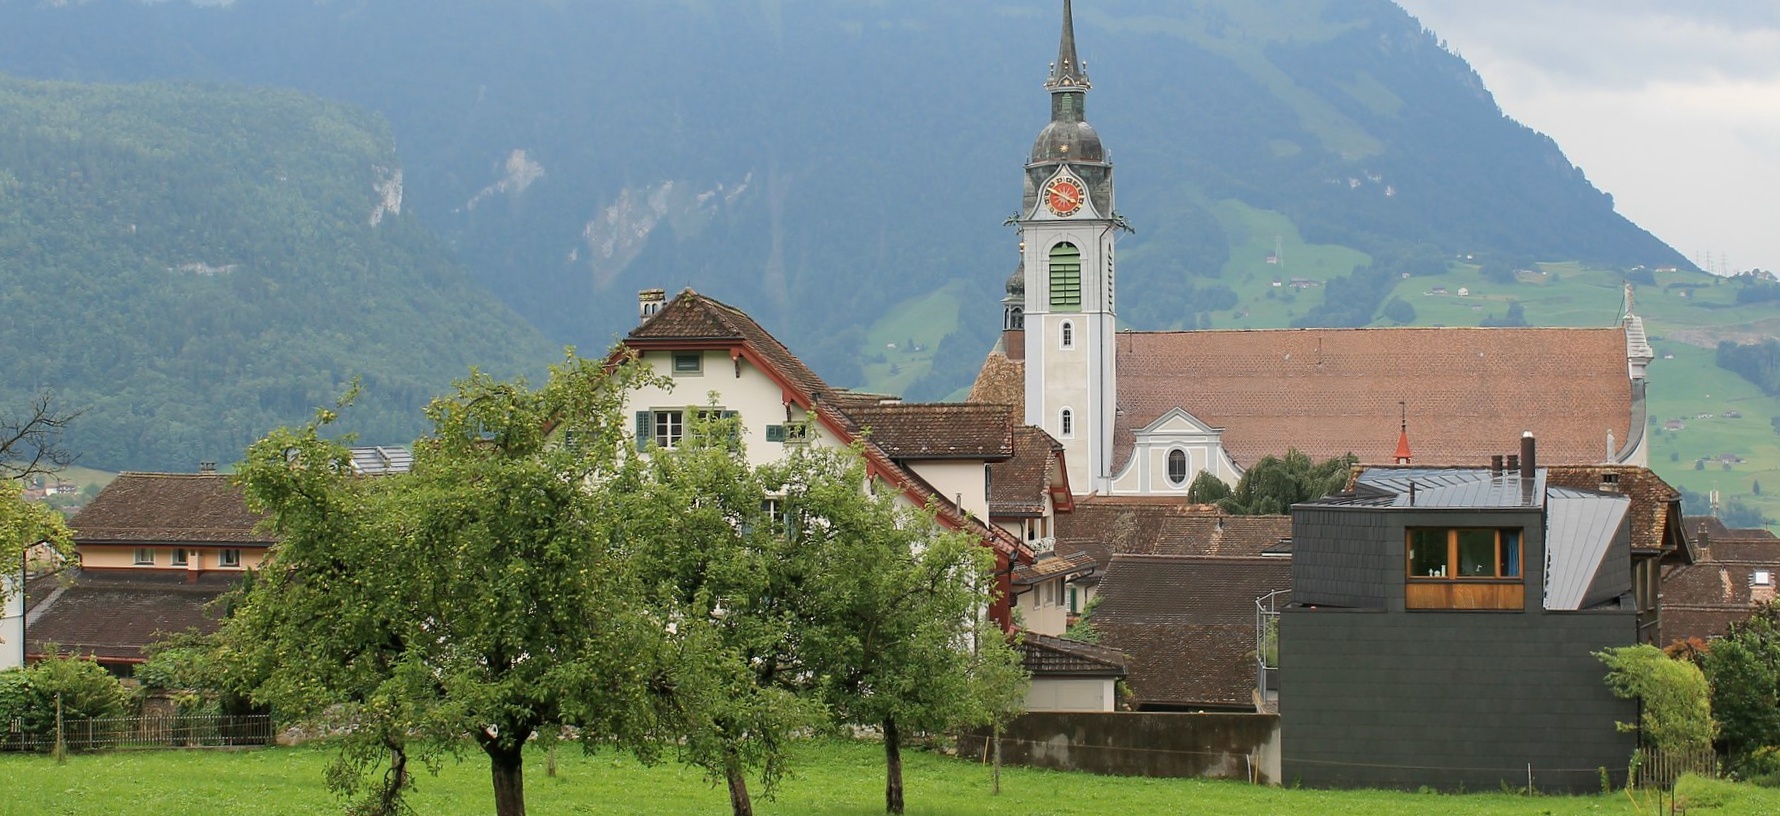 L'Eglise de Schwyz doit décider si elle donne le droit de vote aux étrangers | © Patrick Nouhailler/Flickr/CC BY-SA 2.0